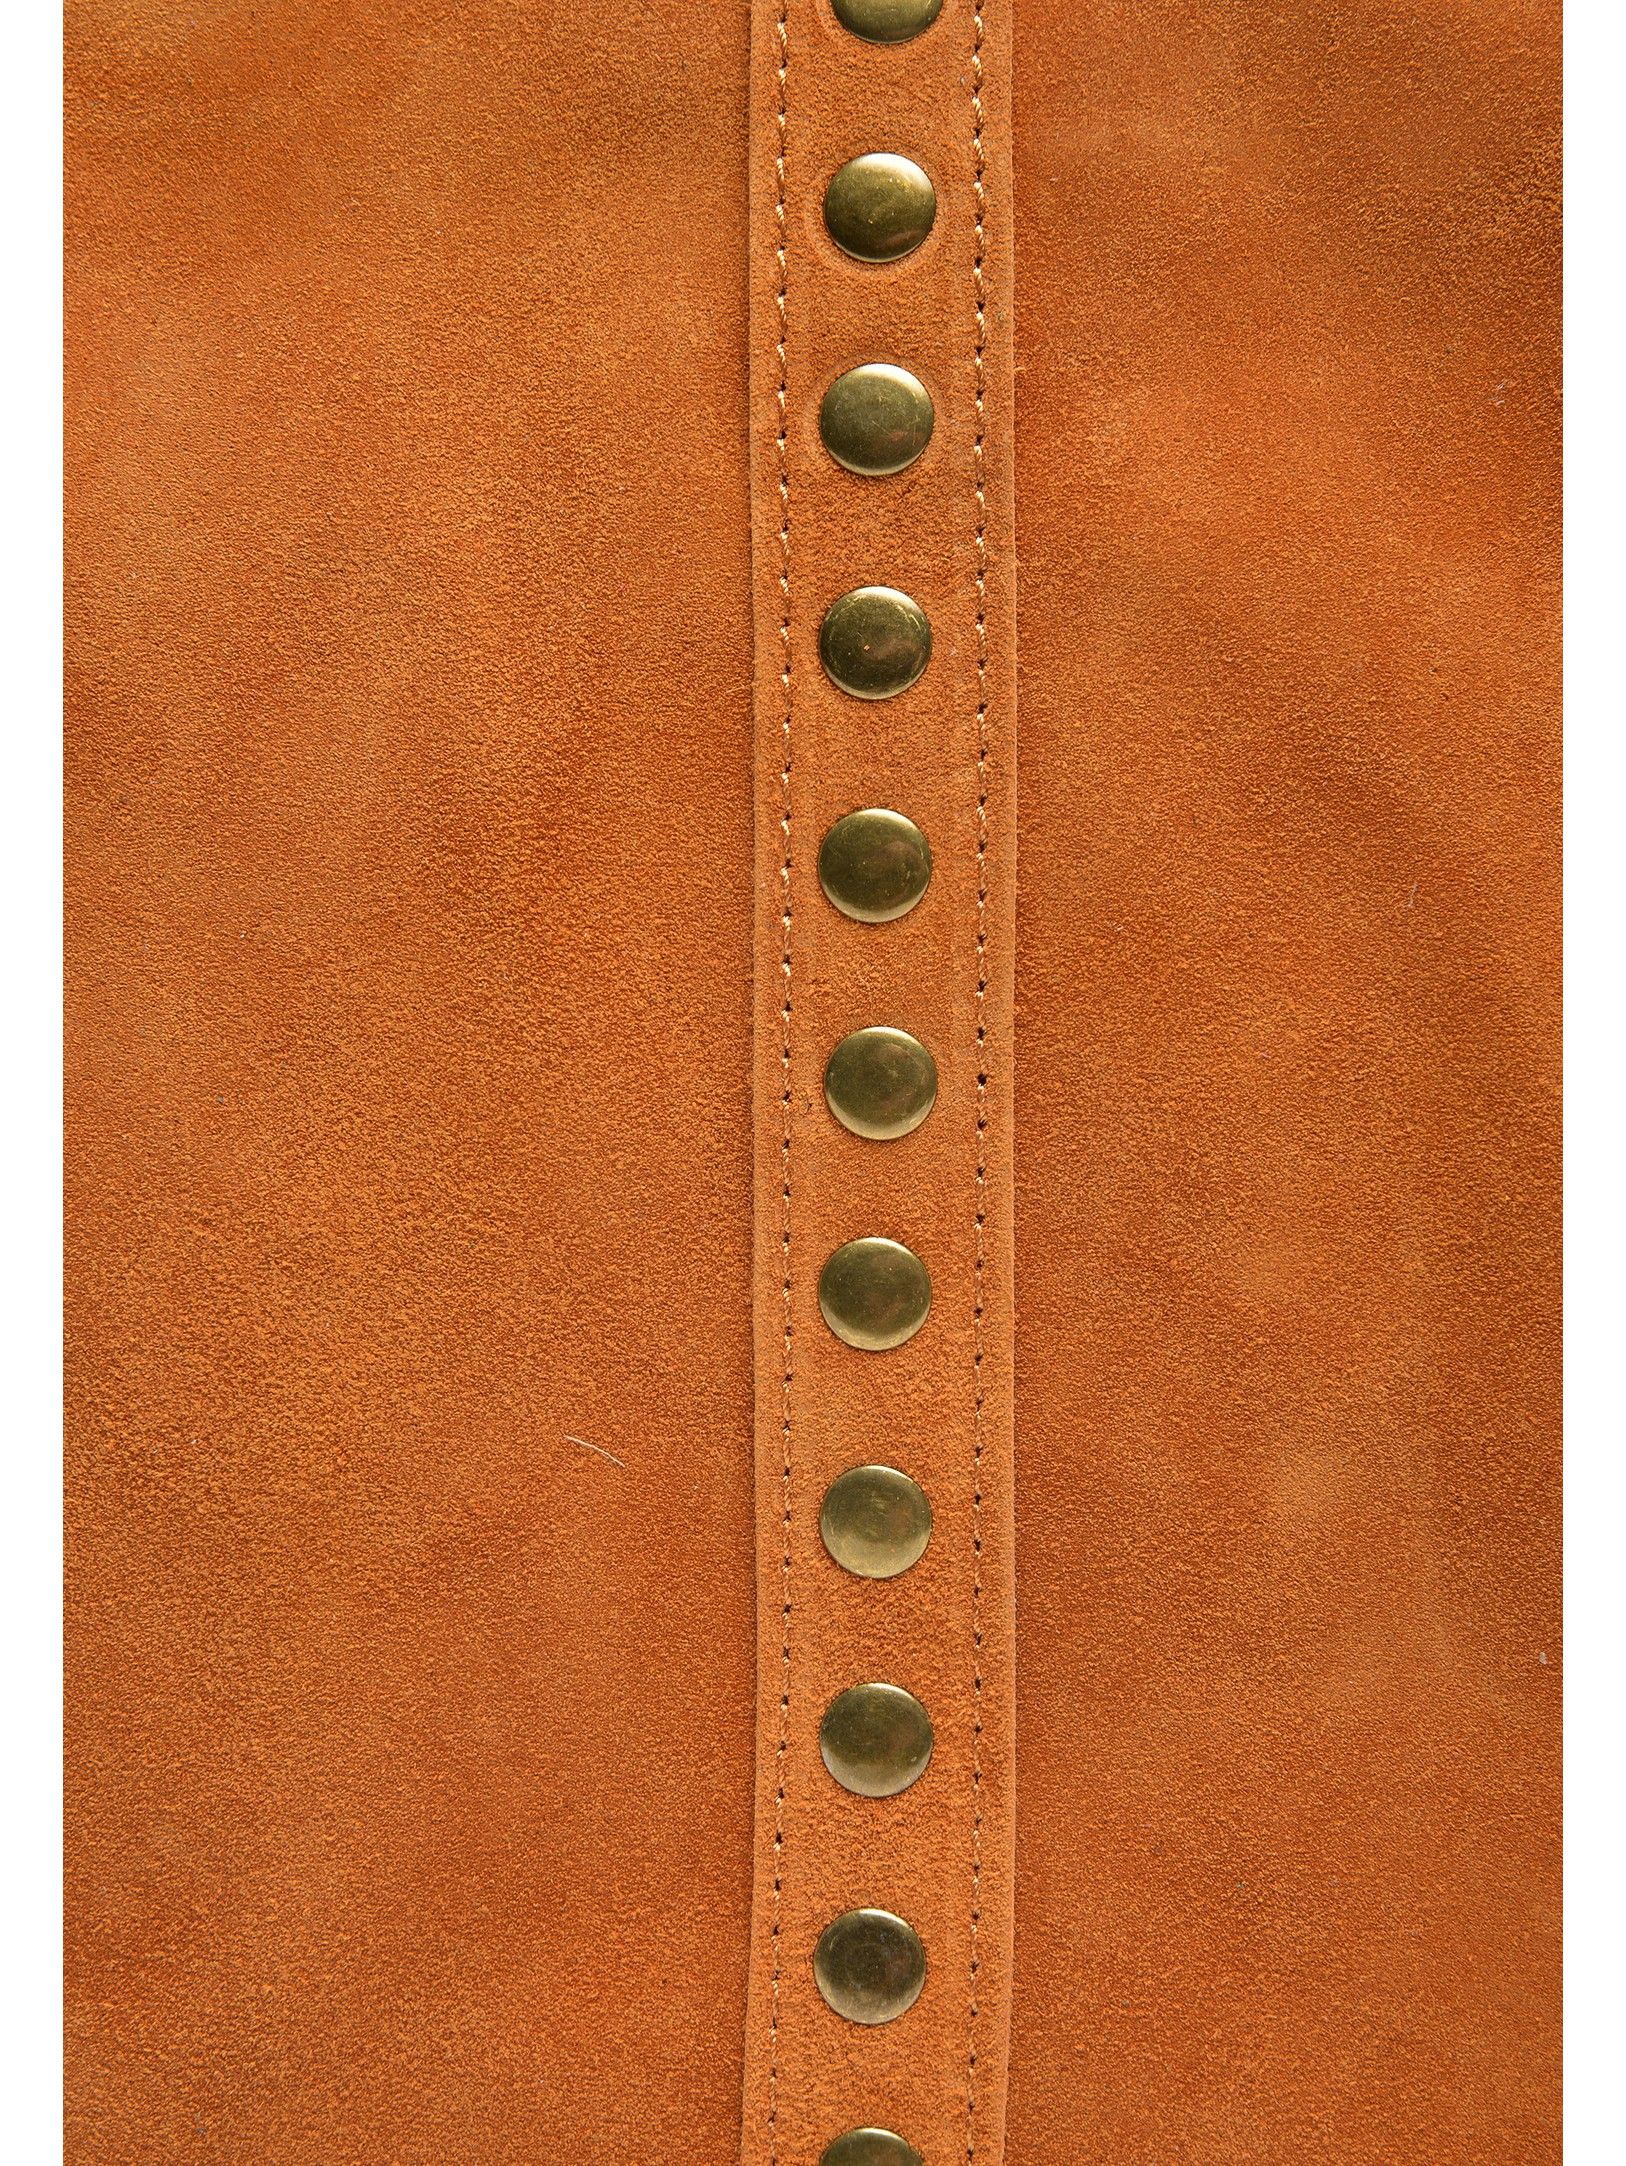 Top Handle Bag
100% cow leather
Top zip closure
Stud decoration
Dimensions(L):28x47x12 cm
Handle:56 cm
Shoulder strap:/ cm